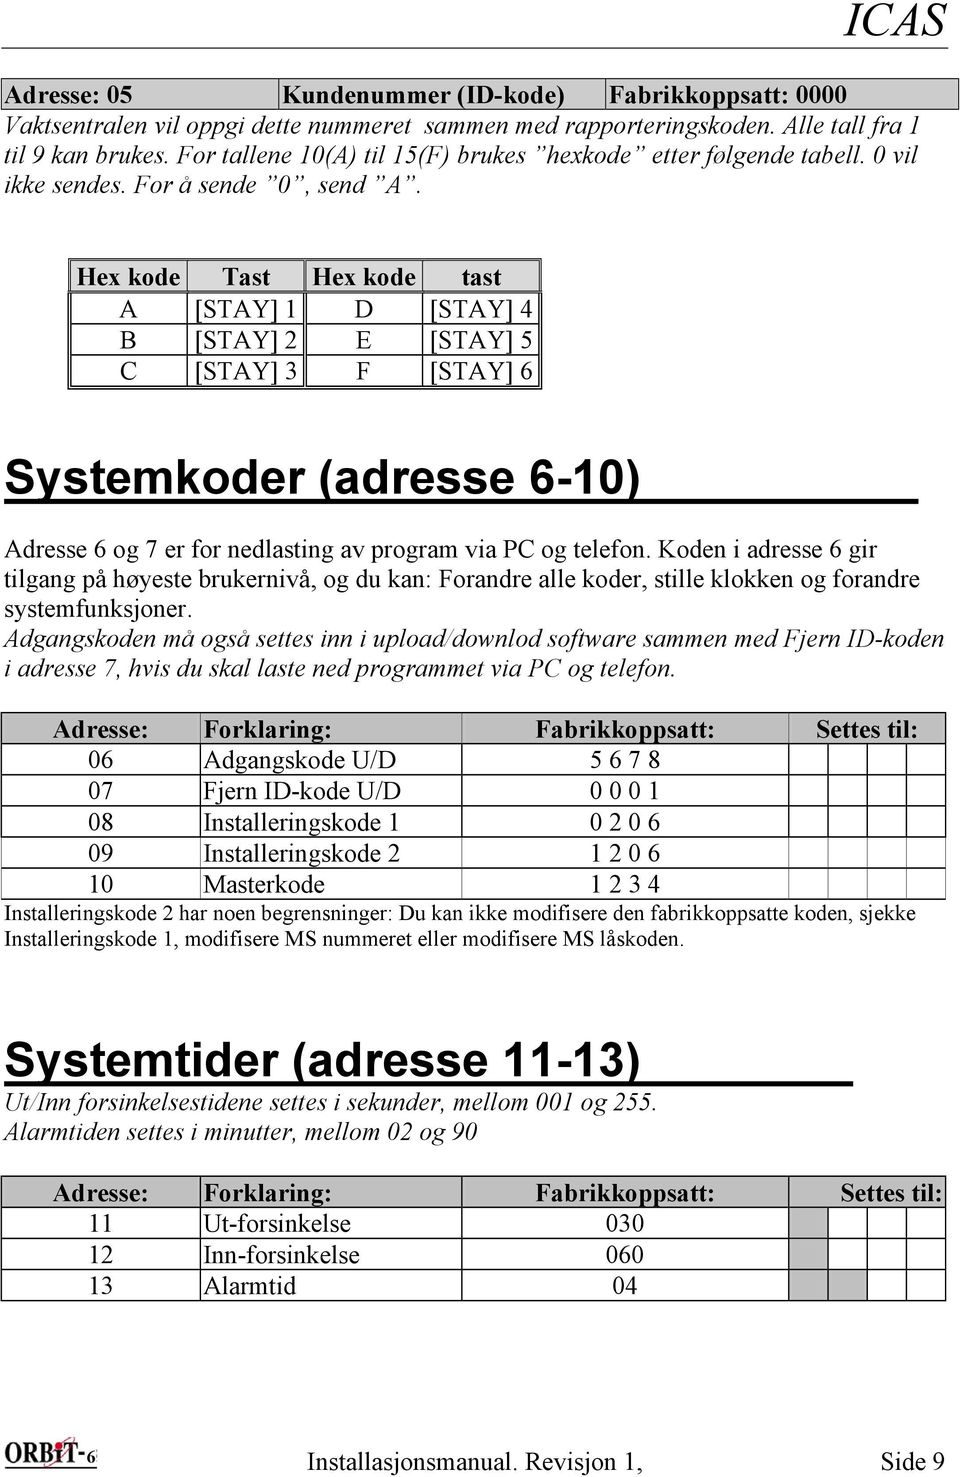 Hex kode Tast Hex kode tast A [STAY] 1 D [STAY] 4 B [STAY] 2 E [STAY] 5 C [STAY] 3 F [STAY] 6 Systemkoder (adresse 6-10) Adresse 6 og 7 er for nedlasting av program via PC og telefon.